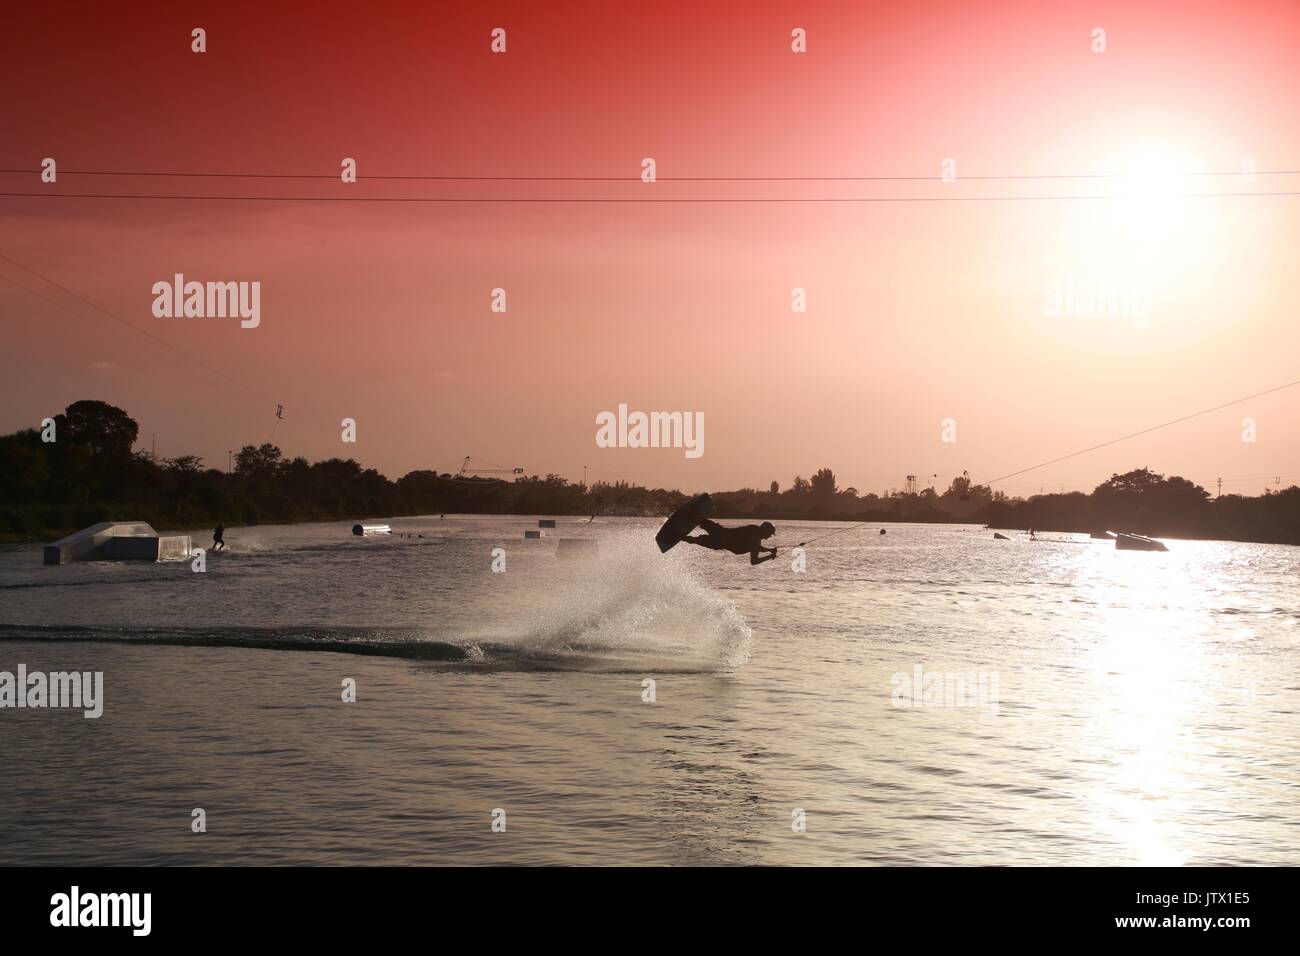 Wake Boarder in Mid-Air tun Half-Somersault auf dem See bei Sonnenuntergang hinter Plume von Spritzwasser durch Rot abgestufte Filter Sky akzentuieren Stockfoto